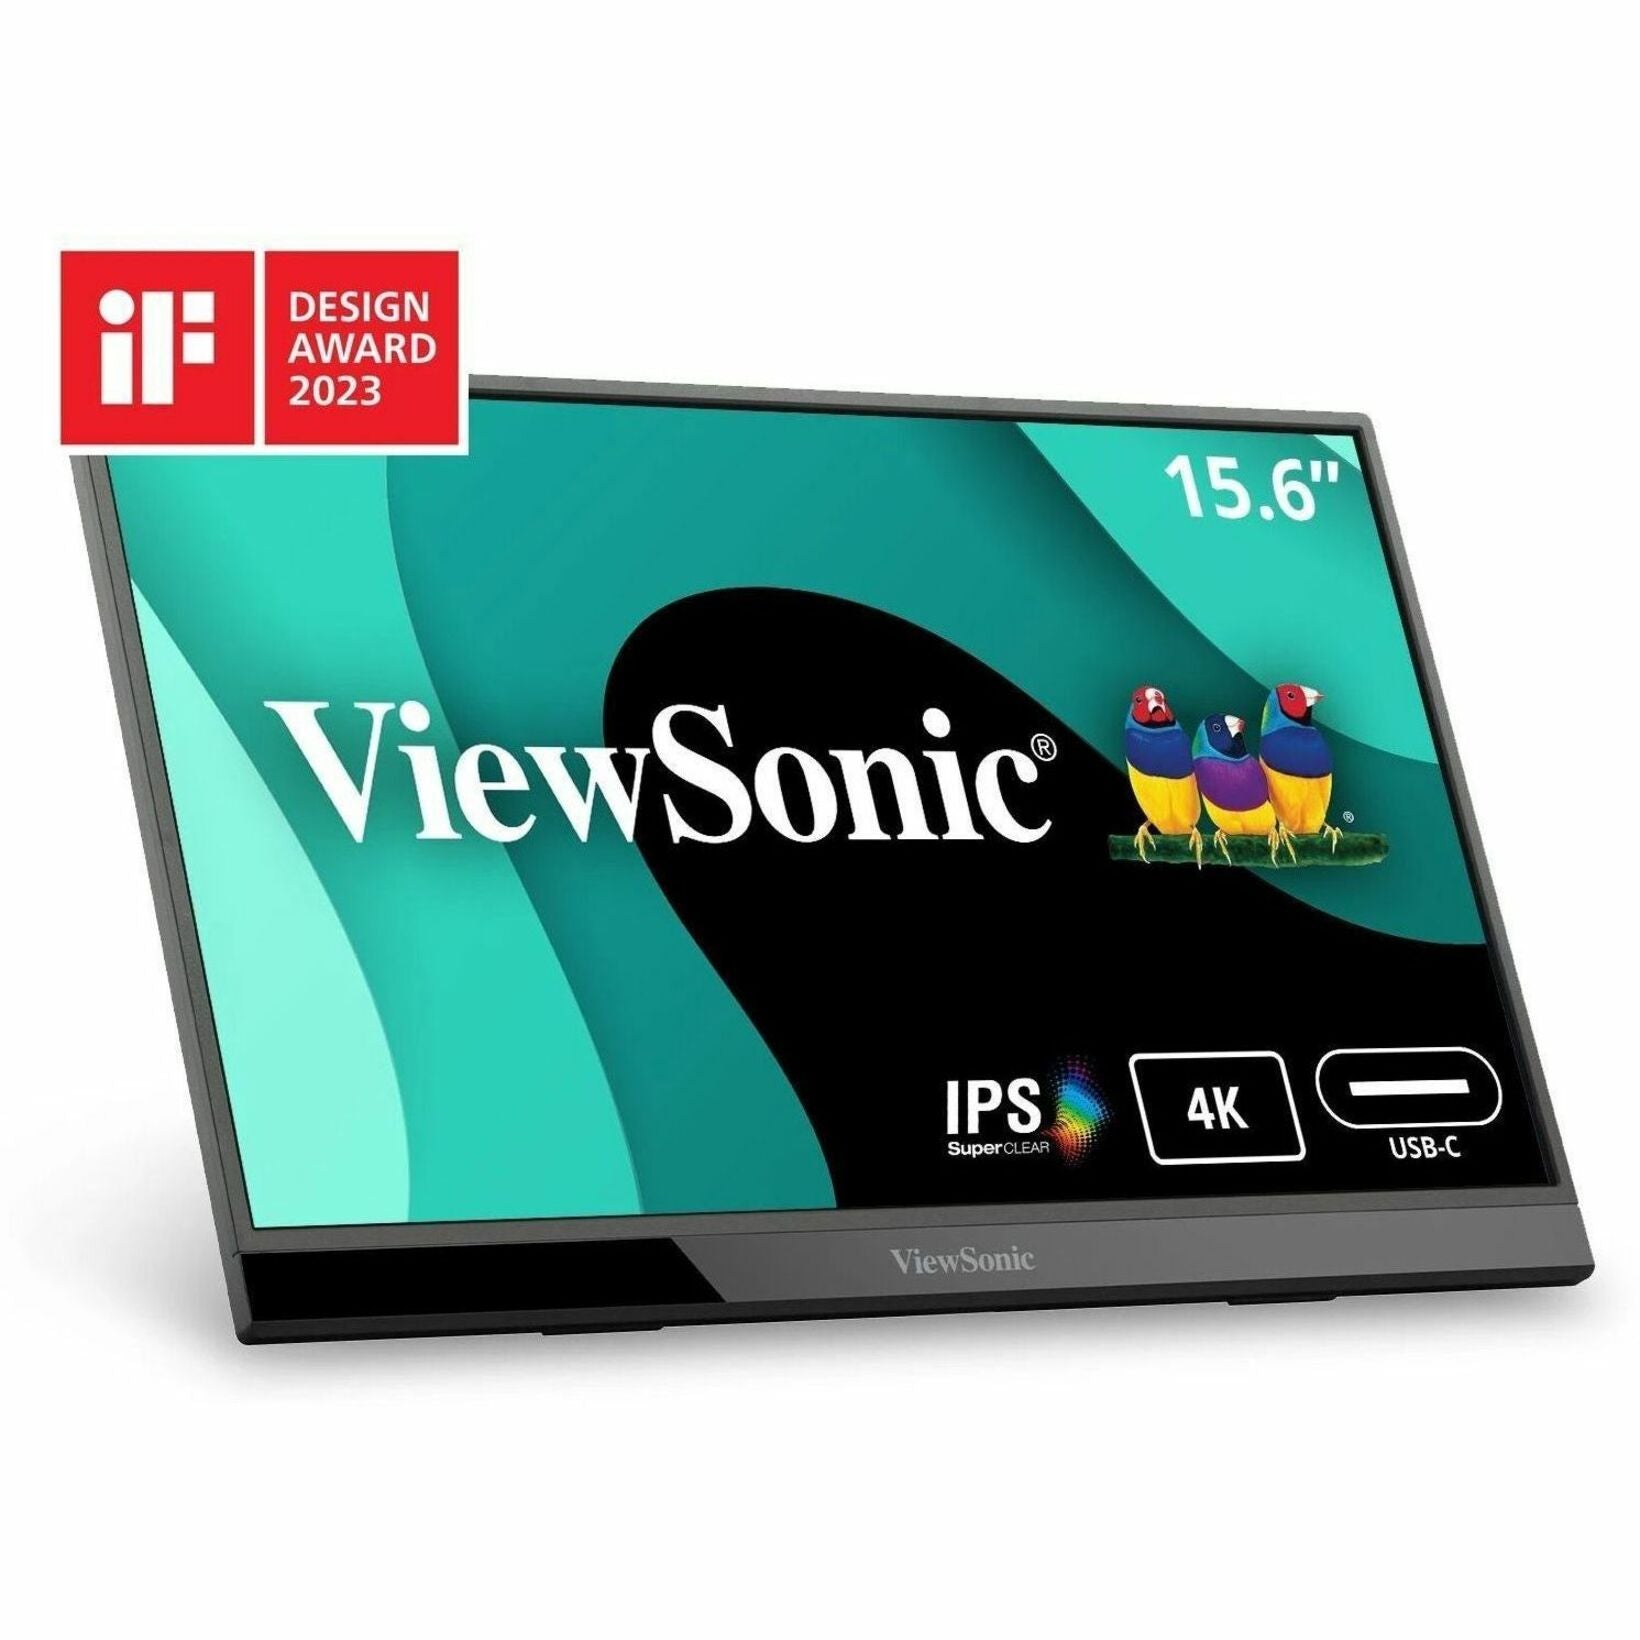 عرض شاشة ViewSonic VX1655-4K للألعاب LED ، شاشة قابلة للنقل بدقة  15.6 "4K UHD مع 60 وات منفذ USB C و mini HDMI العلامة التجارية: فيوسونيك  فيوسونيك